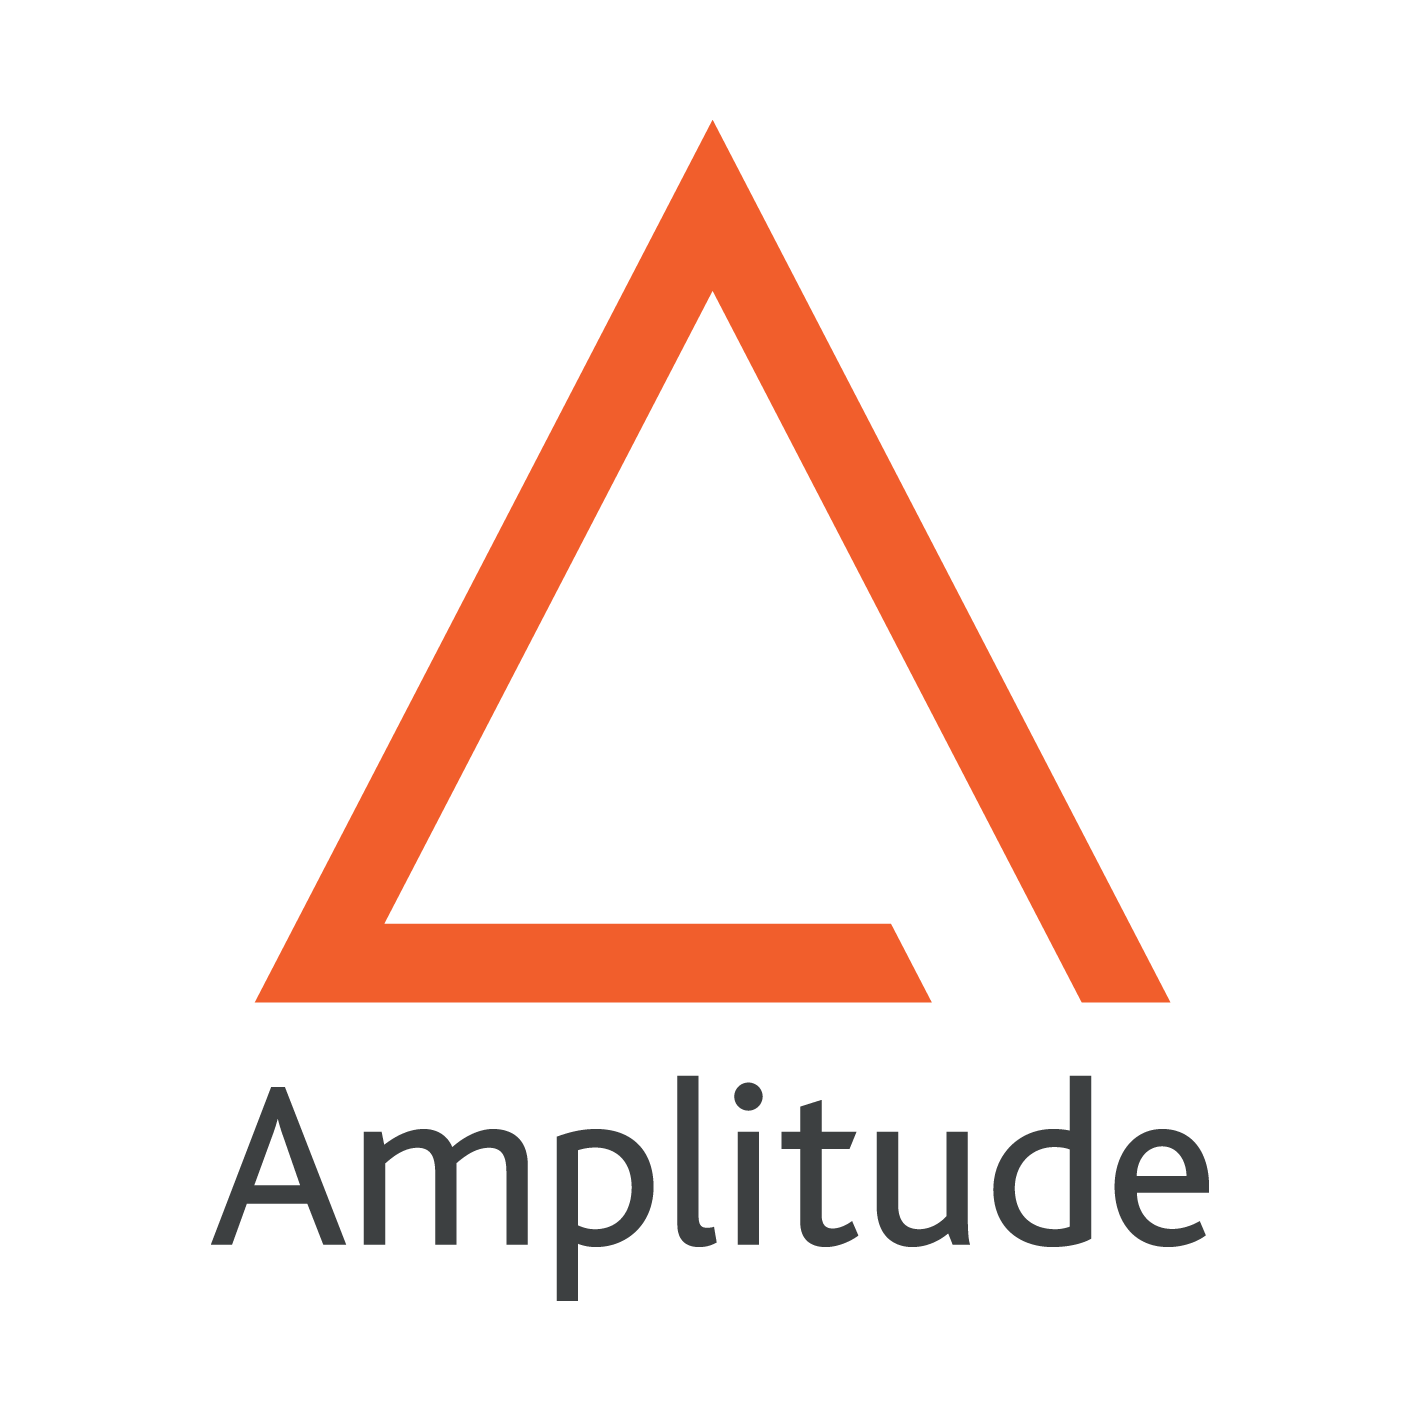 Amplitude_RVB.png